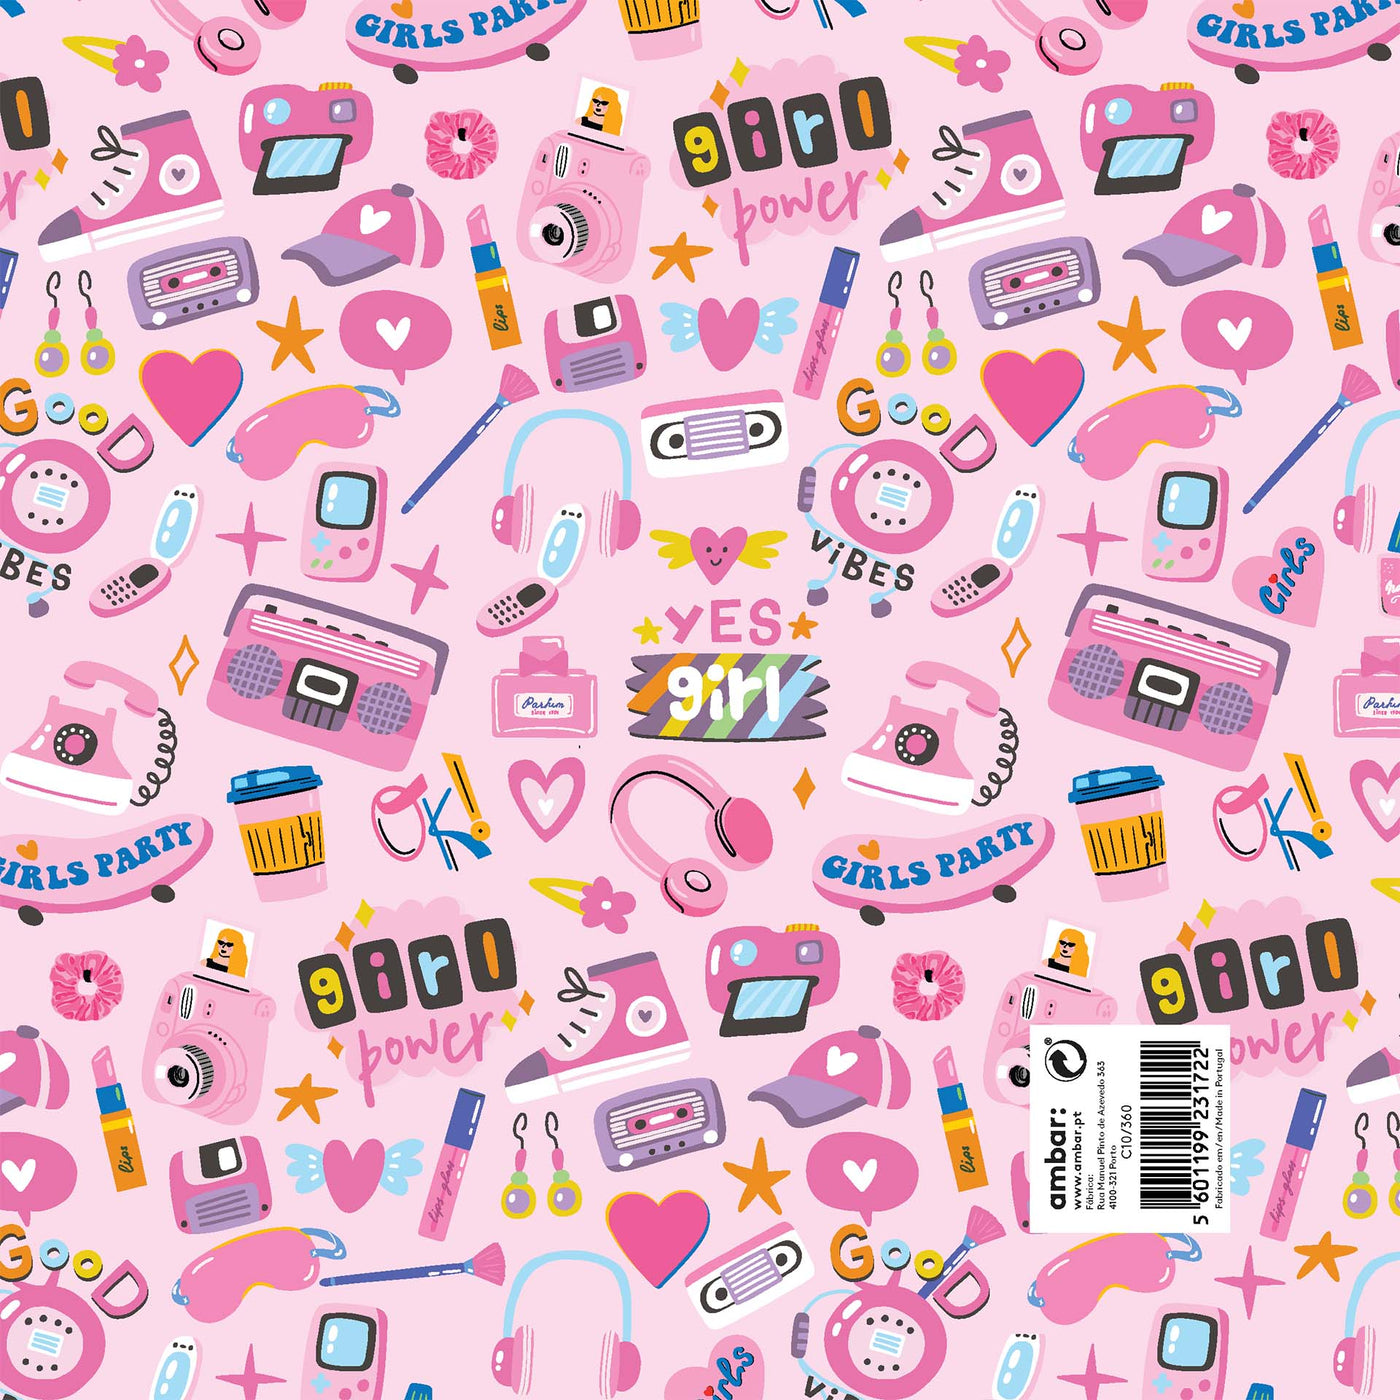 Resma de 25 Folhas de Papel Infantil Girls Party C10/360